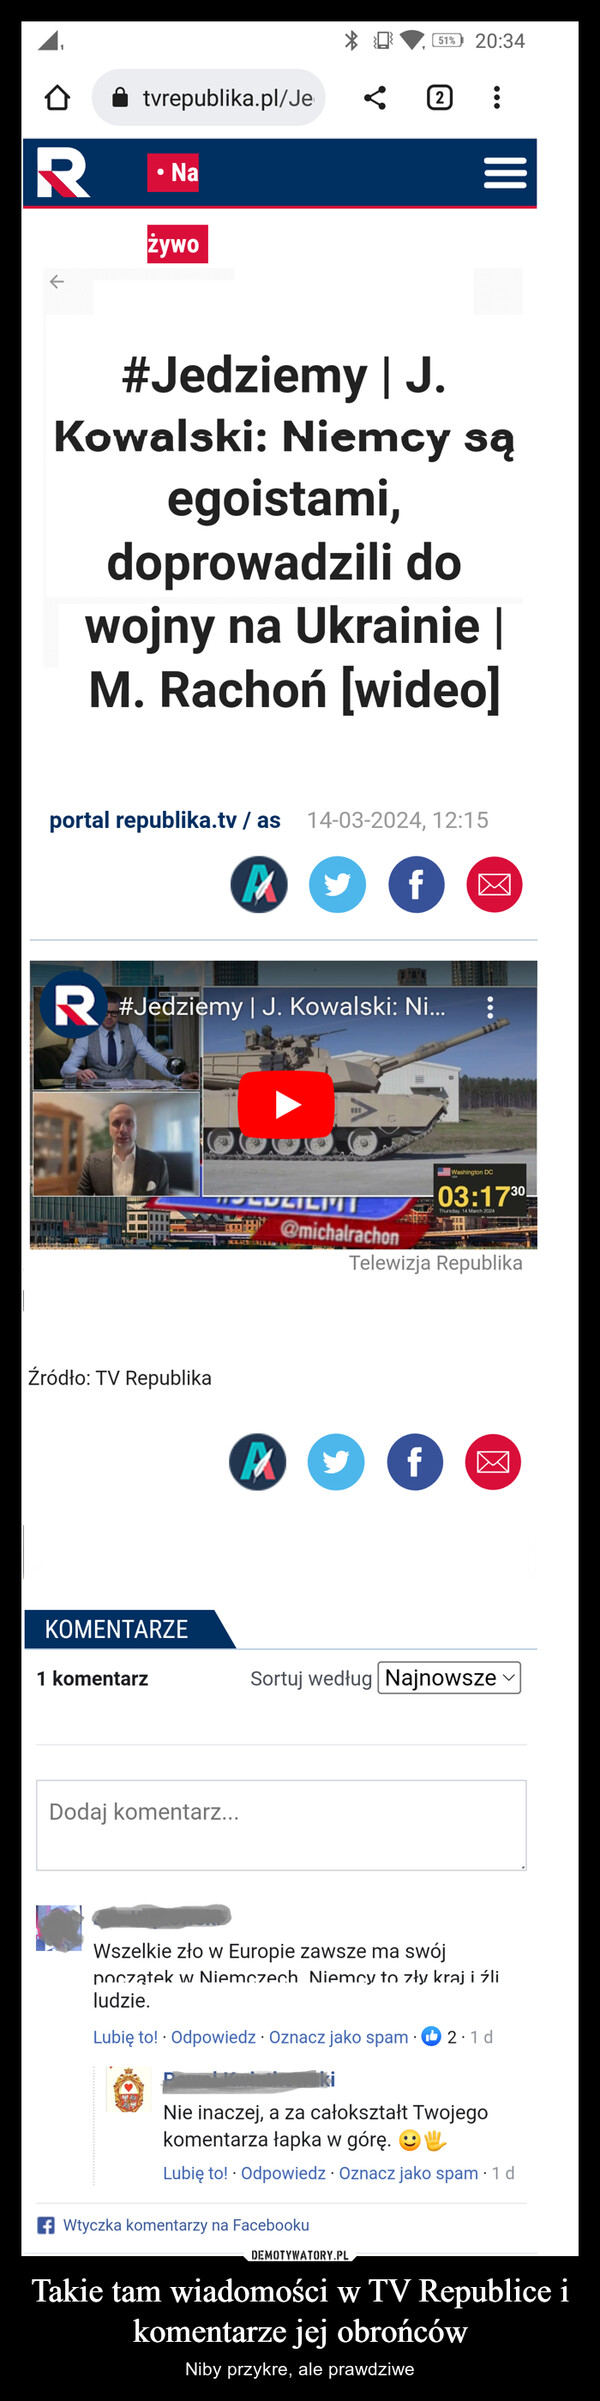 Takie tam wiadomości w TV Republice i komentarze jej obrońców – Niby przykre, ale prawdziwe 151% 20:34tvrepublika.pl/Je2RNażywoلا|||#Jedziemy | J.Kowalski: Niemcy sąegoistami,doprowadzili dowojny na Ukrainie |M. Rachon [wideo]portal republika.tv/ as 14-03-2024, 12:15f☑R #Jedziemy | J. Kowalski: Ni...Źródło: TV RepublikaTCLILI@michalrachonWashington DC03:1730Thursday, 14 March 2024Telewizja RepublikaMf-h☑KOMENTARZE1 komentarzSortuj według NajnowszeDodaj komentarz...Wszelkie zło w Europie zawsze ma swójpoczątek w Niemczech. Niemcy to zły kraj i źliludzie.Lubię to! Odpowiedz · Oznacz jako spam ◉2.1dNie inaczej, a za całokształt Twojegokomentarza łapka w górę. ☺Lubię to! Odpowiedz Oznacz jako spam - 1 df Wtyczka komentarzy na Facebooku